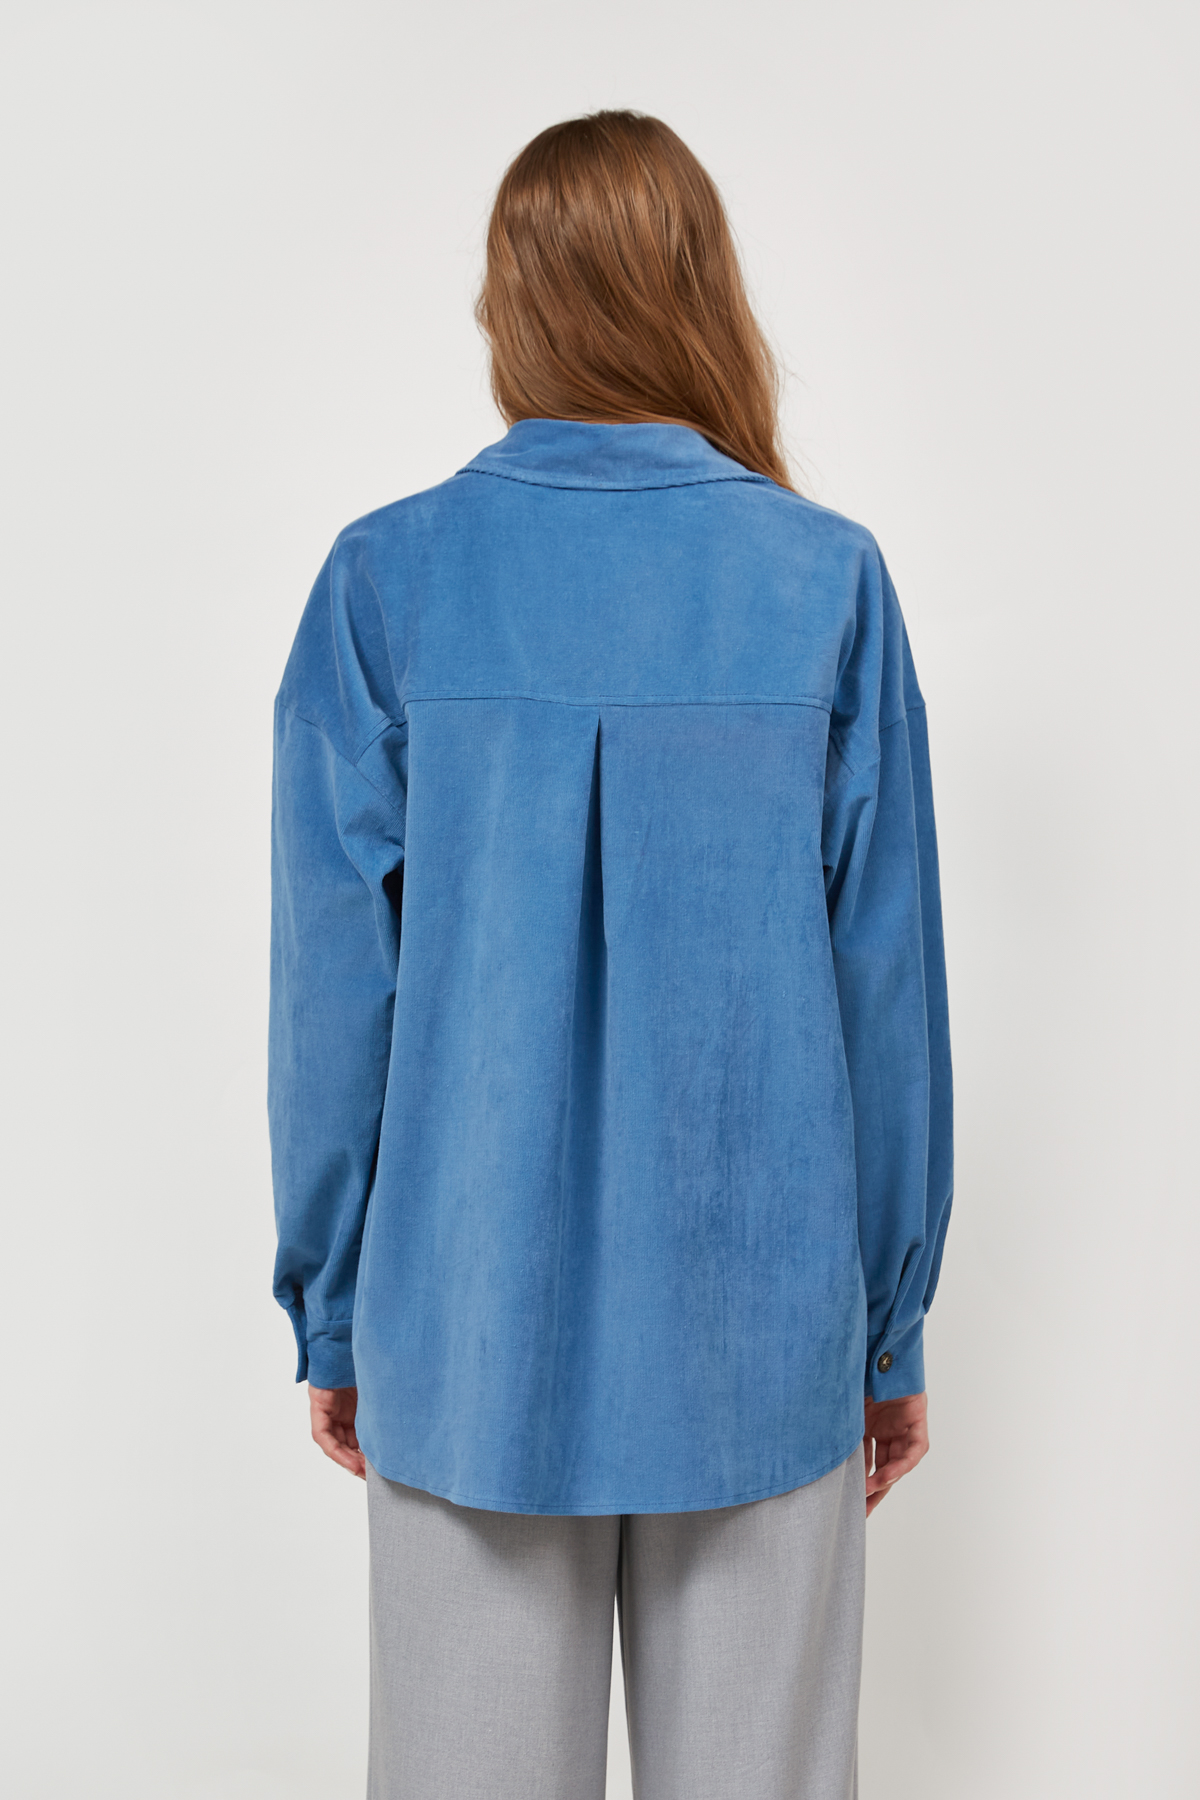 Oversized blue shirt jacket , photo 4